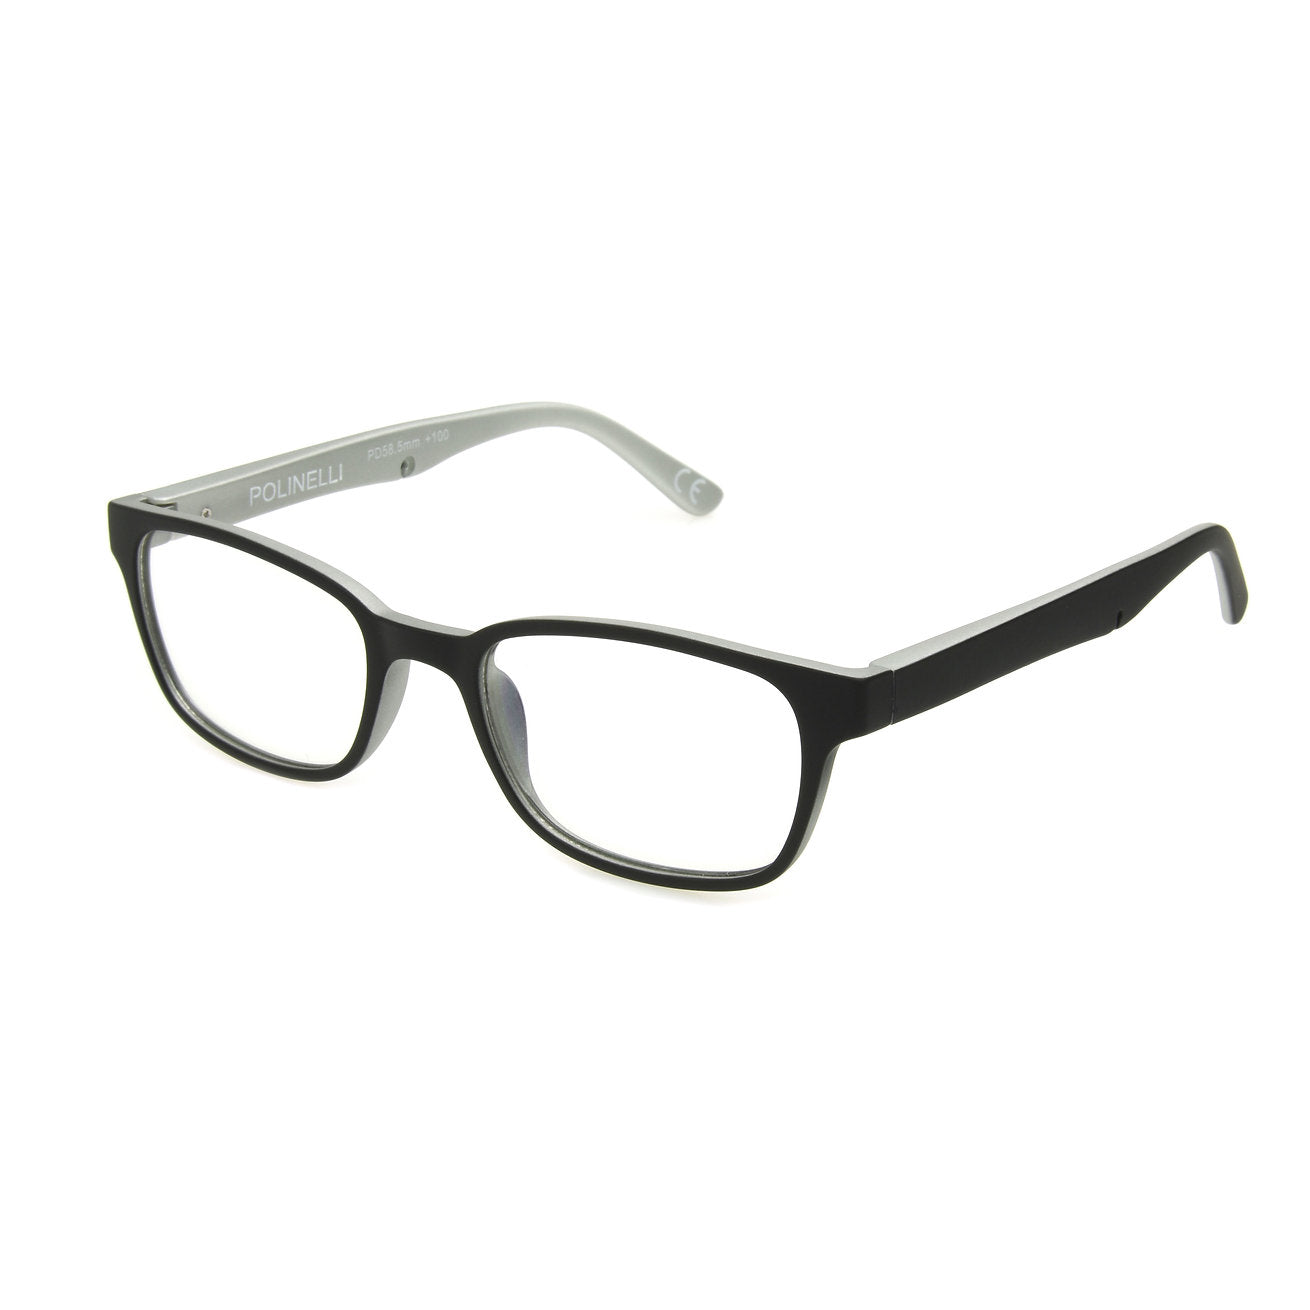 Polinelli Reading Eyeglasses - Blue Light Blocker - Model P306 ...